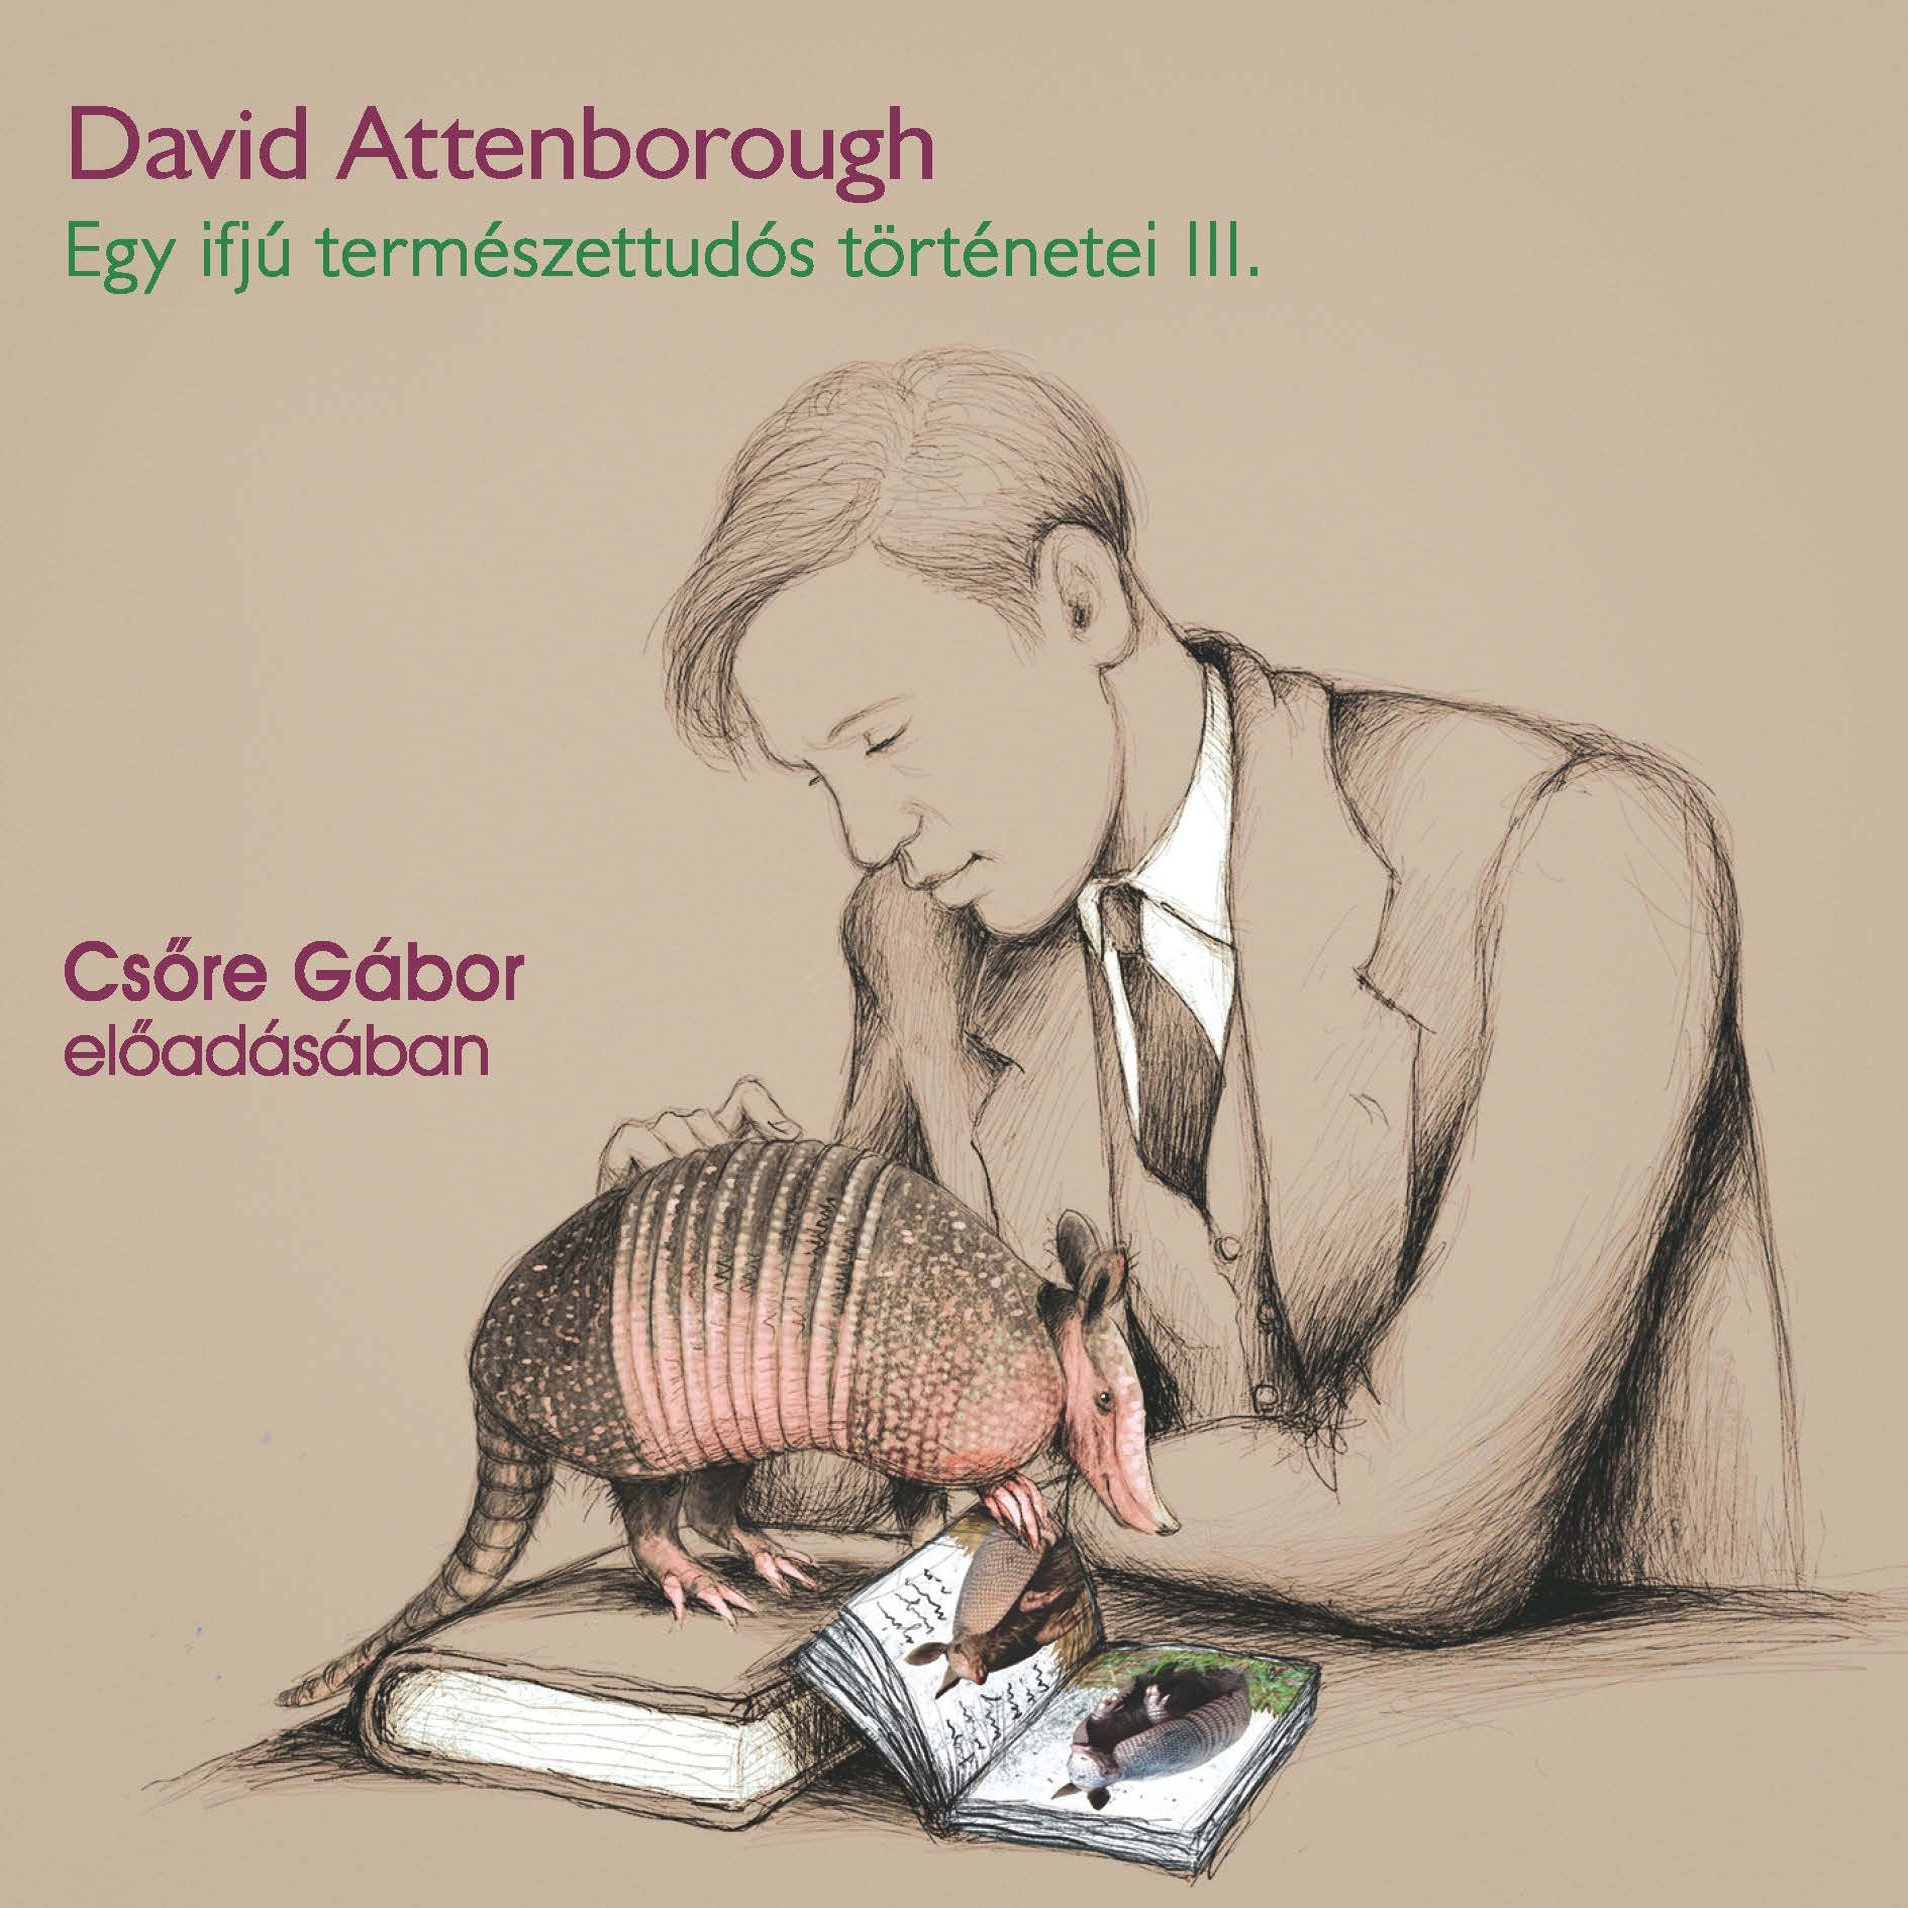 David Attenborough - Egy ifjú természettudós történetei III. - Gyűjtőút Paraguayban [eHangoskönyv]